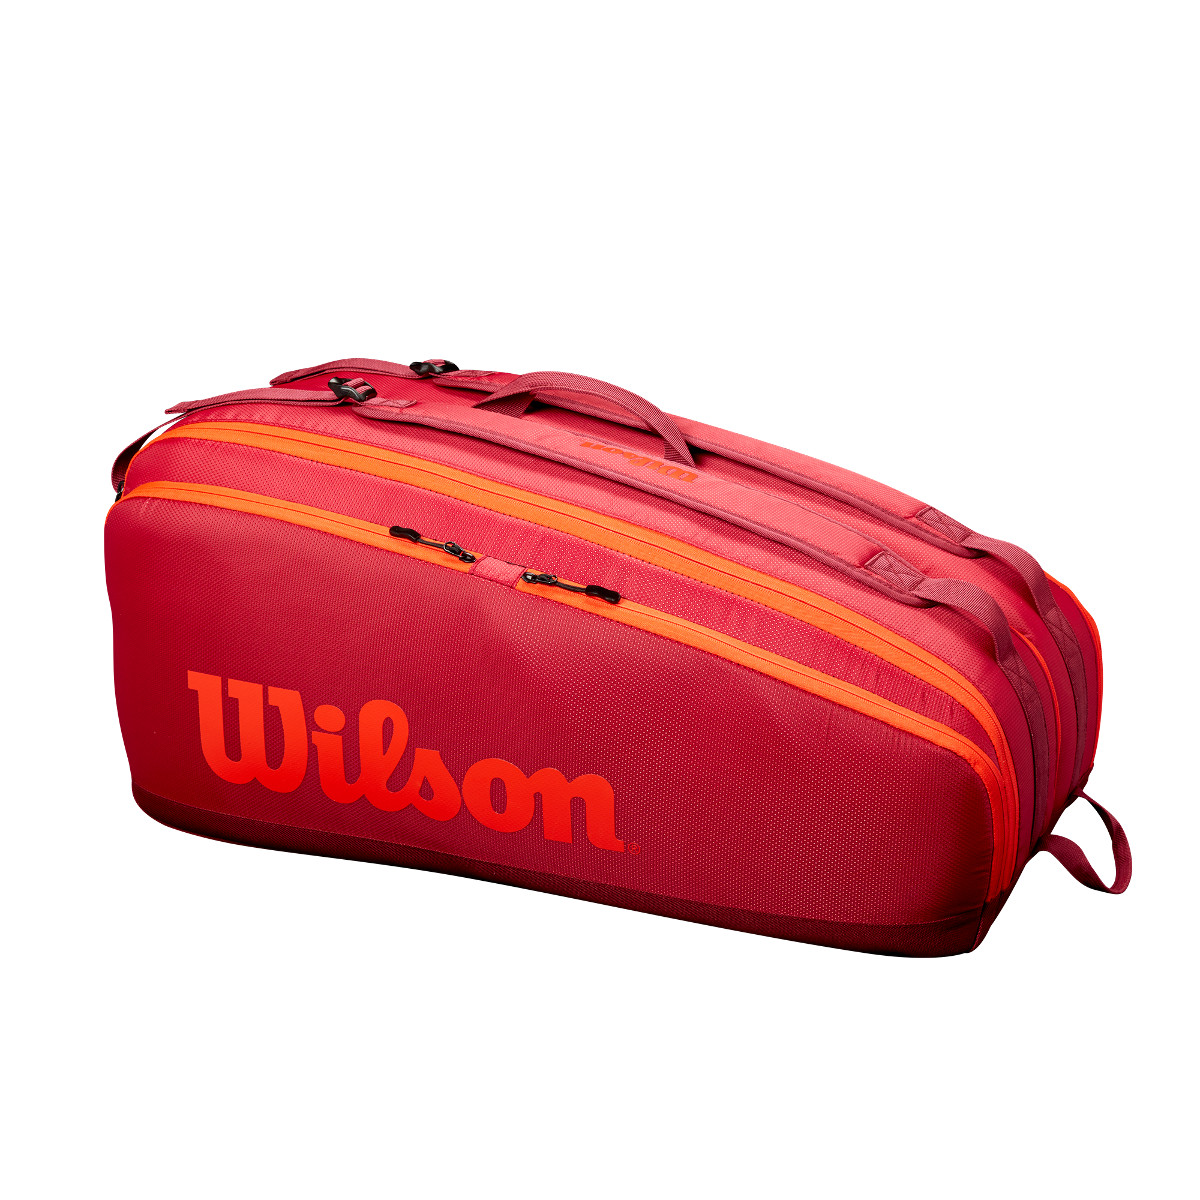 Wilson Tour 3 Comp Tennistasche rot UVP 100,00€ NEU 